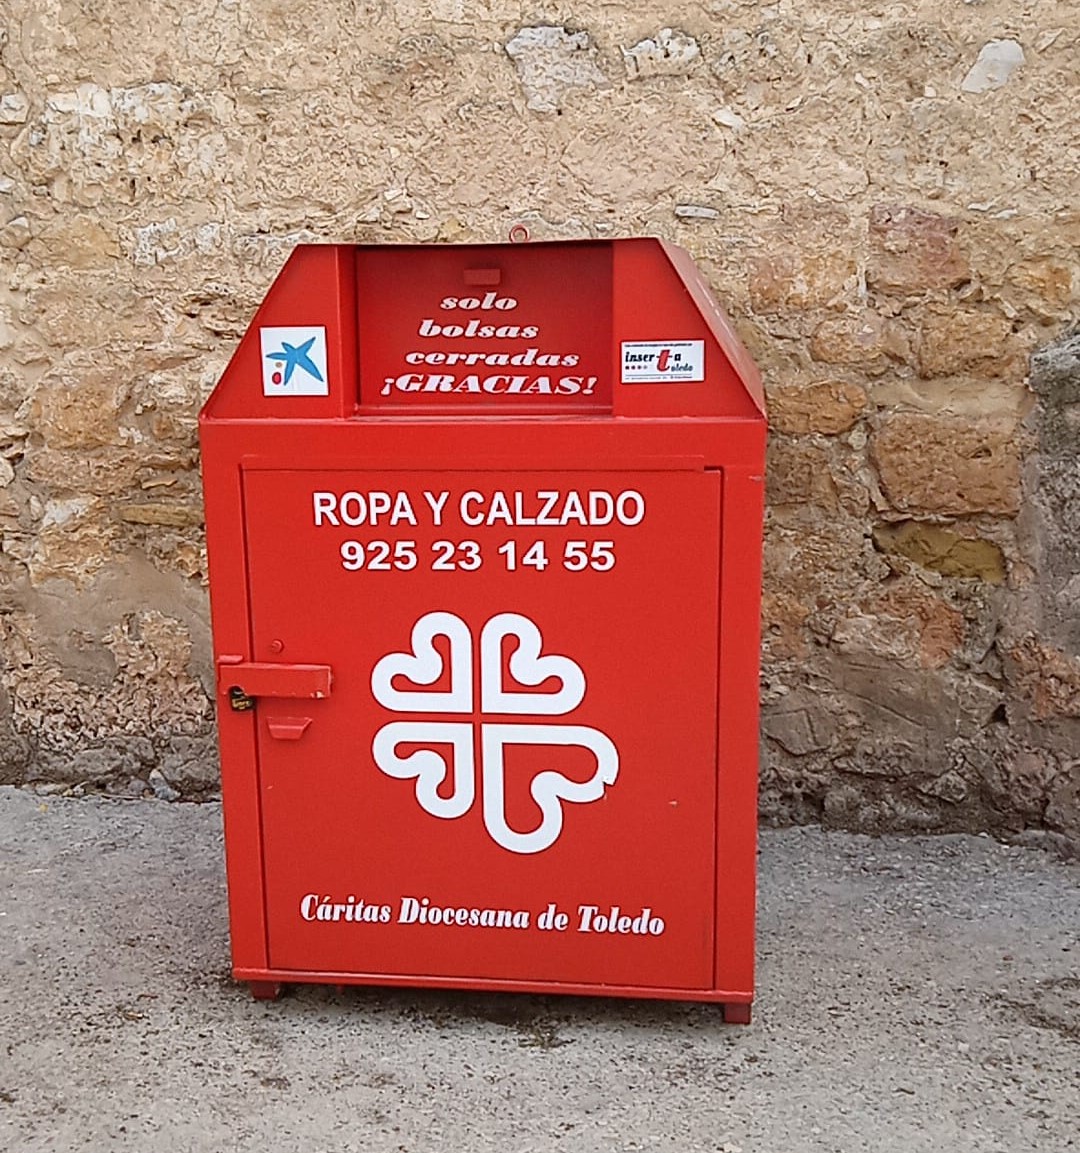 La donación de ropa usada en los contenedores de contribuye a la creación de empleo y al cuidado del ambiente - Cáritas Diocesana de Toledo